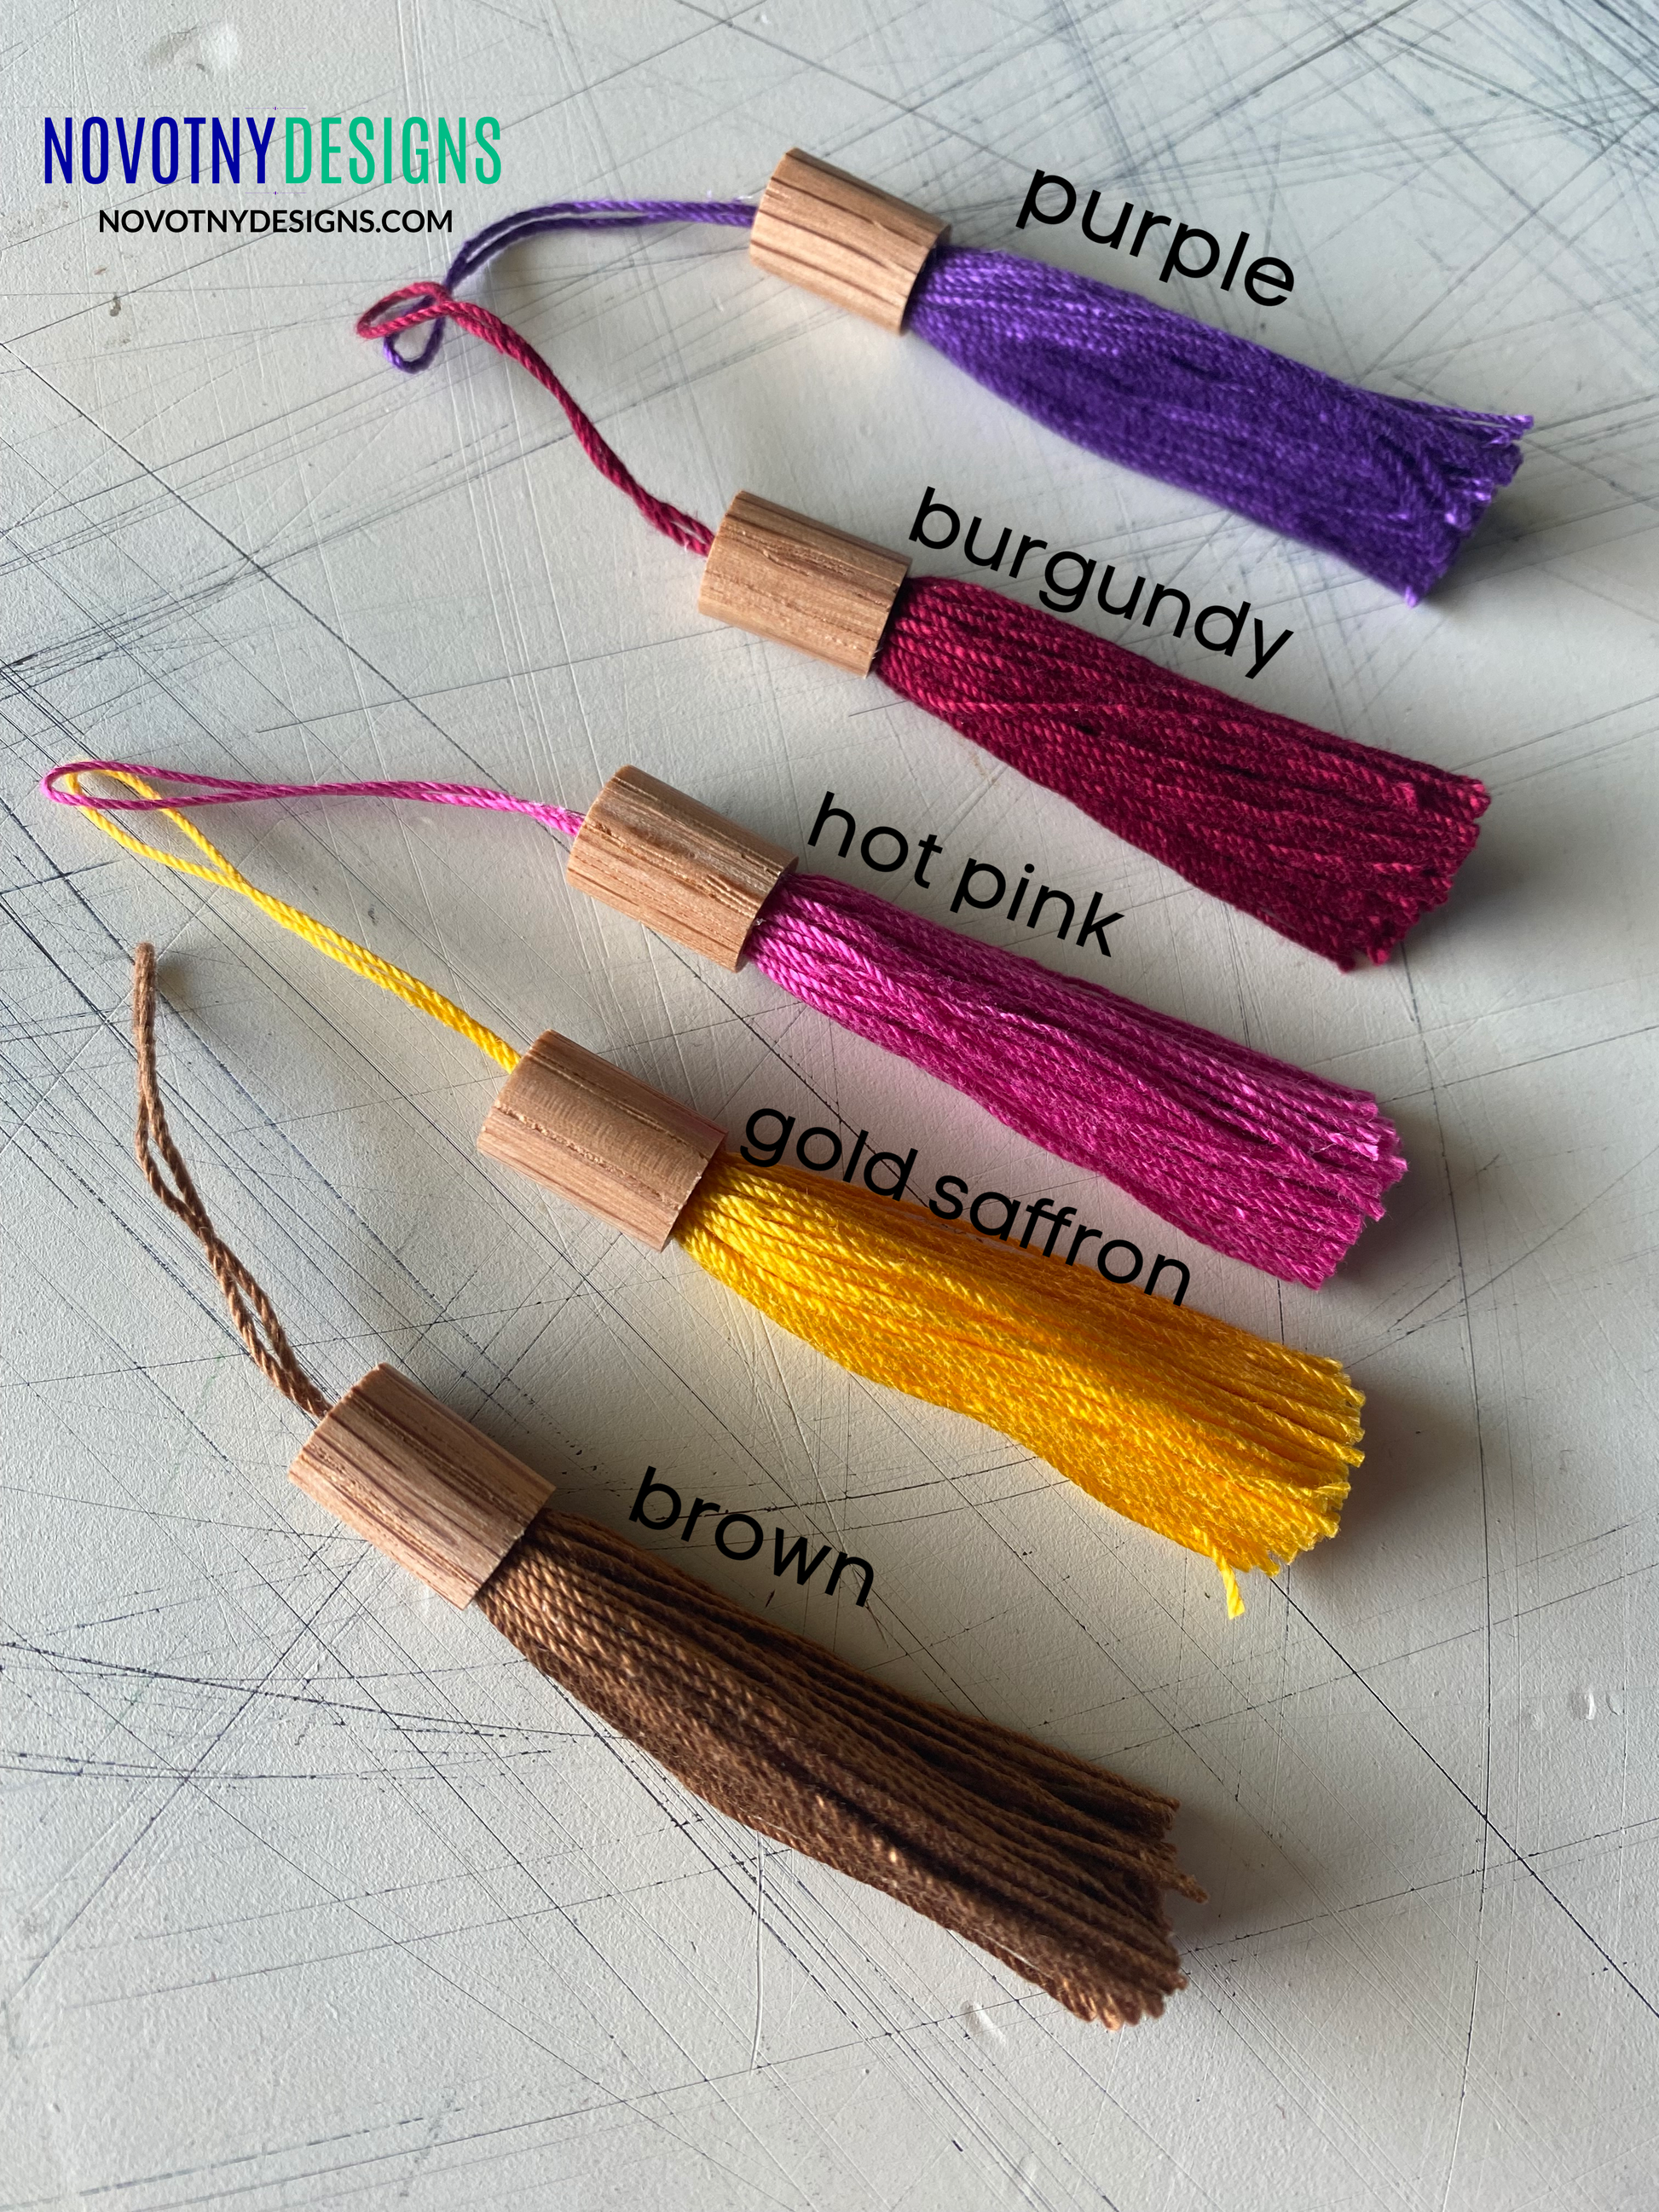 Bookmark tassel choices - purple, burgundy, hot pink, gold saffron, brown